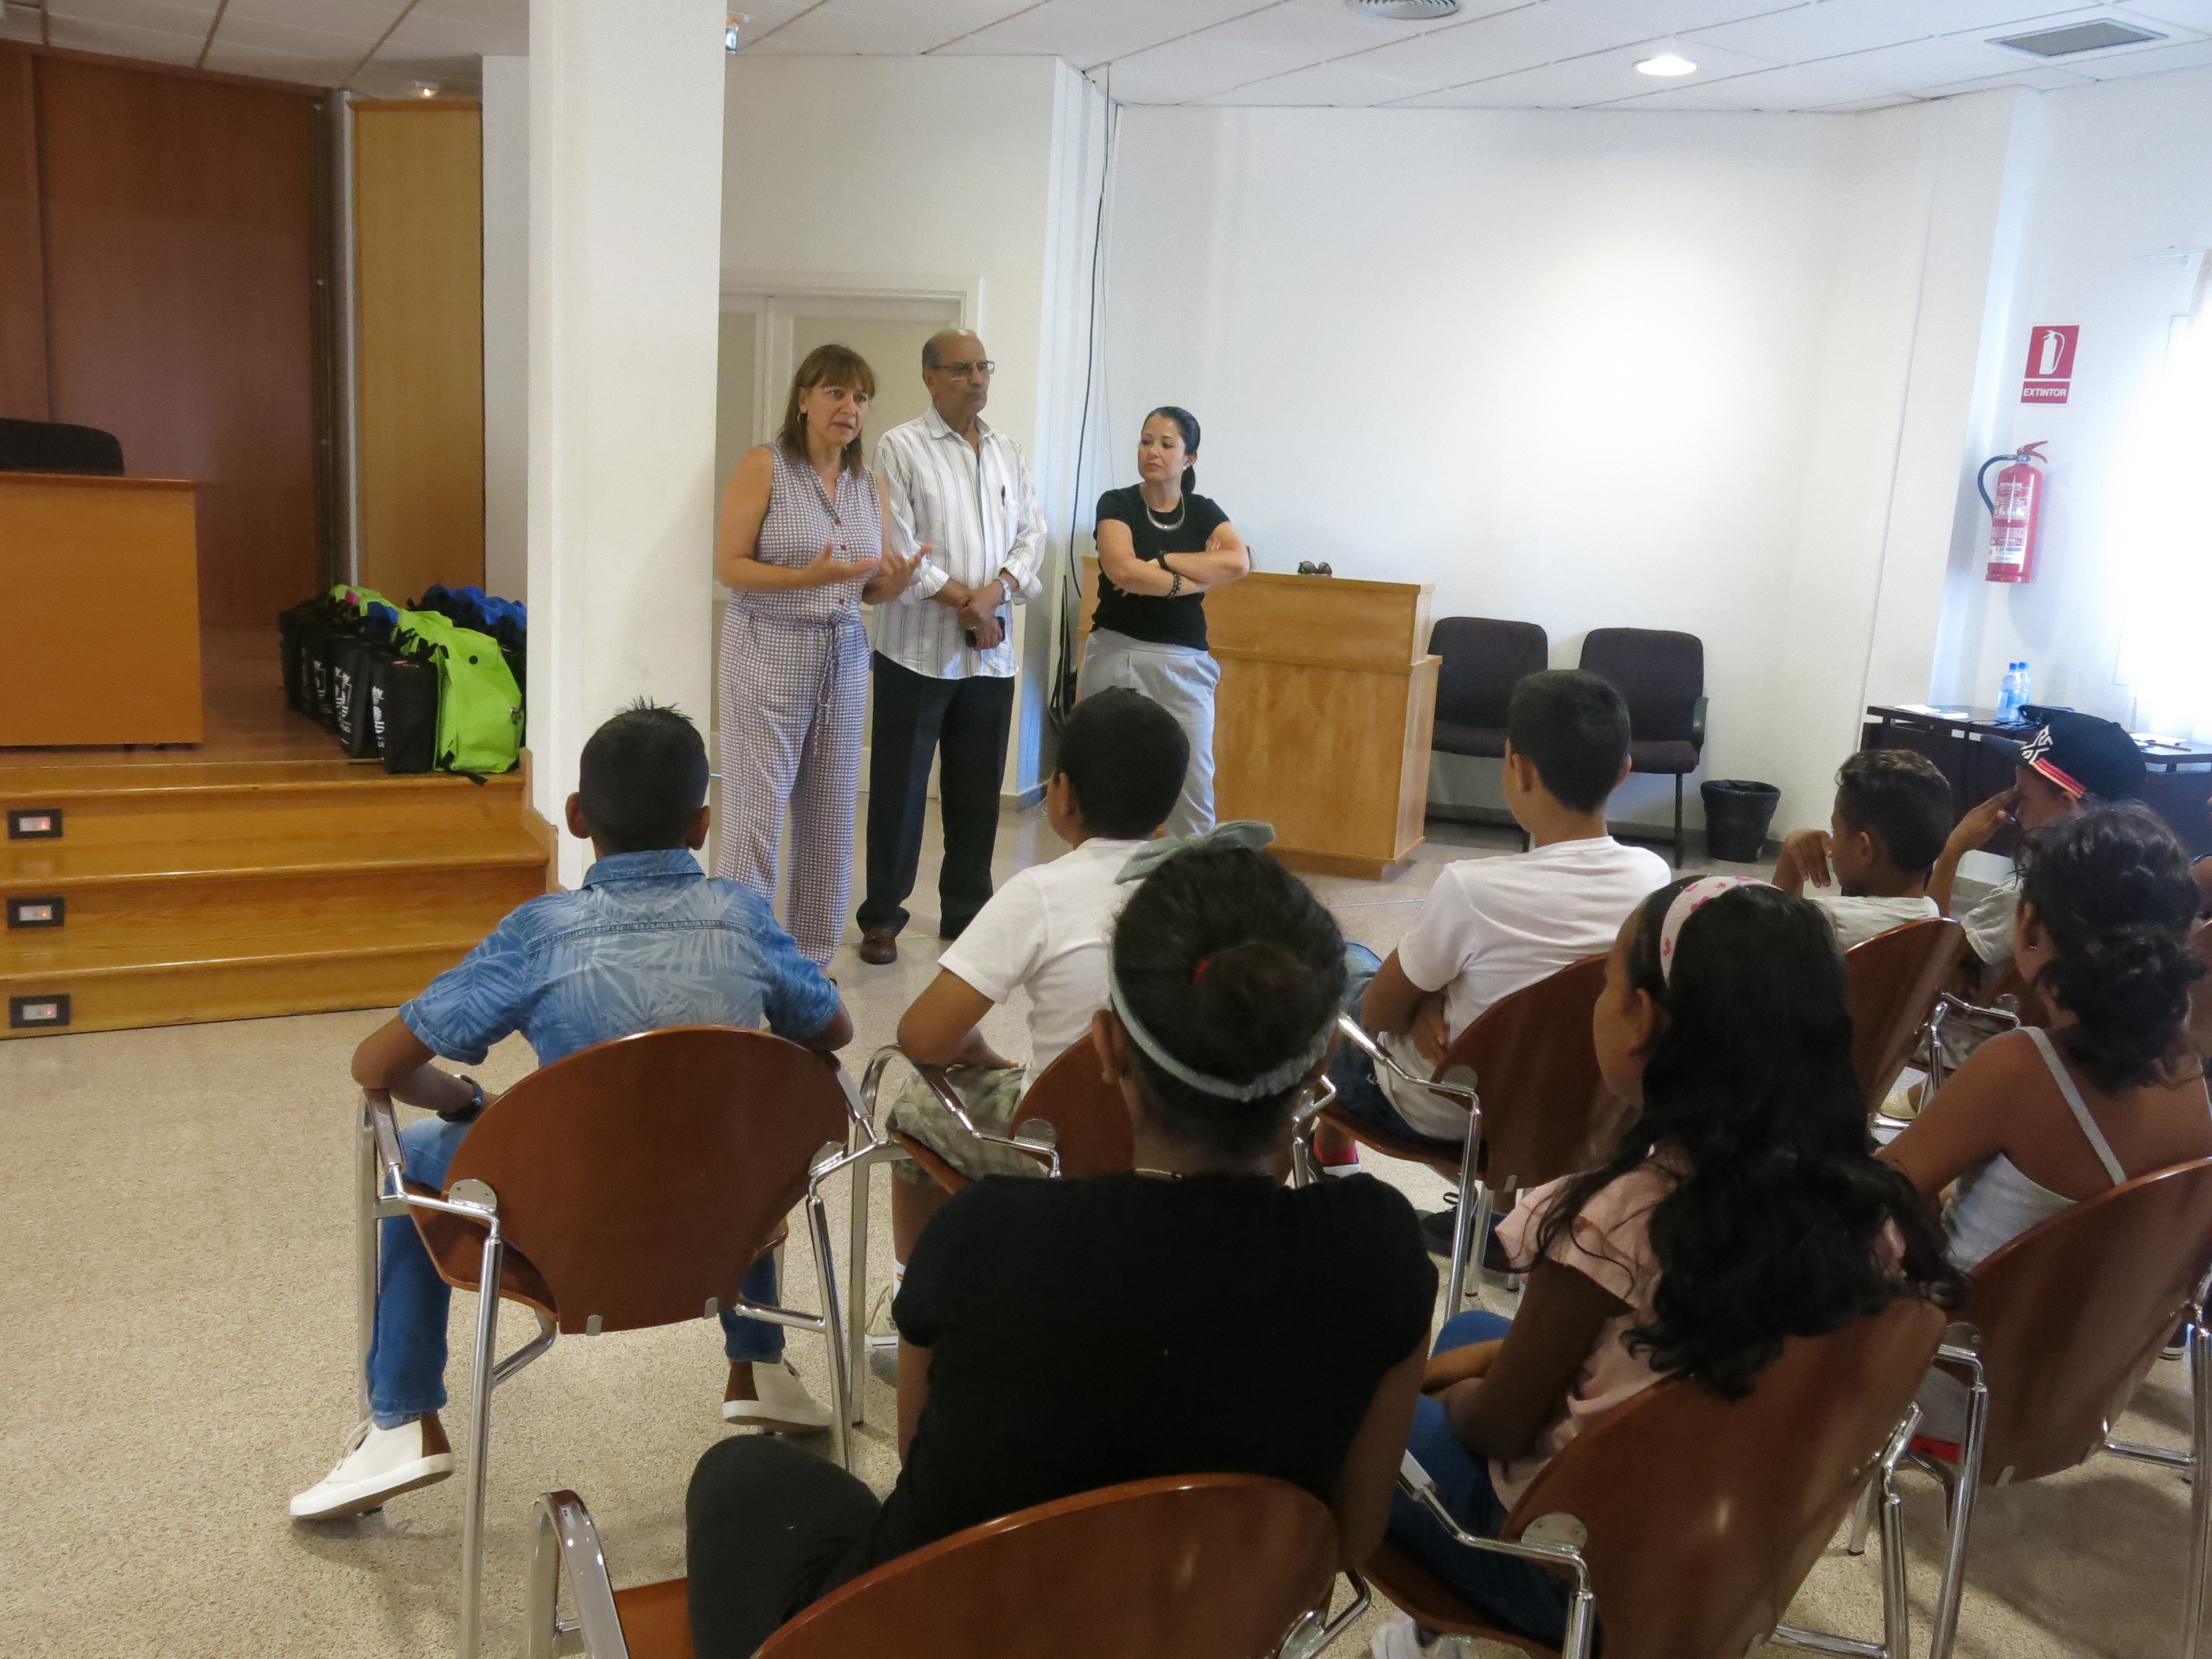 La alcaldesa da la bienvenida a niños y niñas saharauis acogidos por familias de Santa Lucía